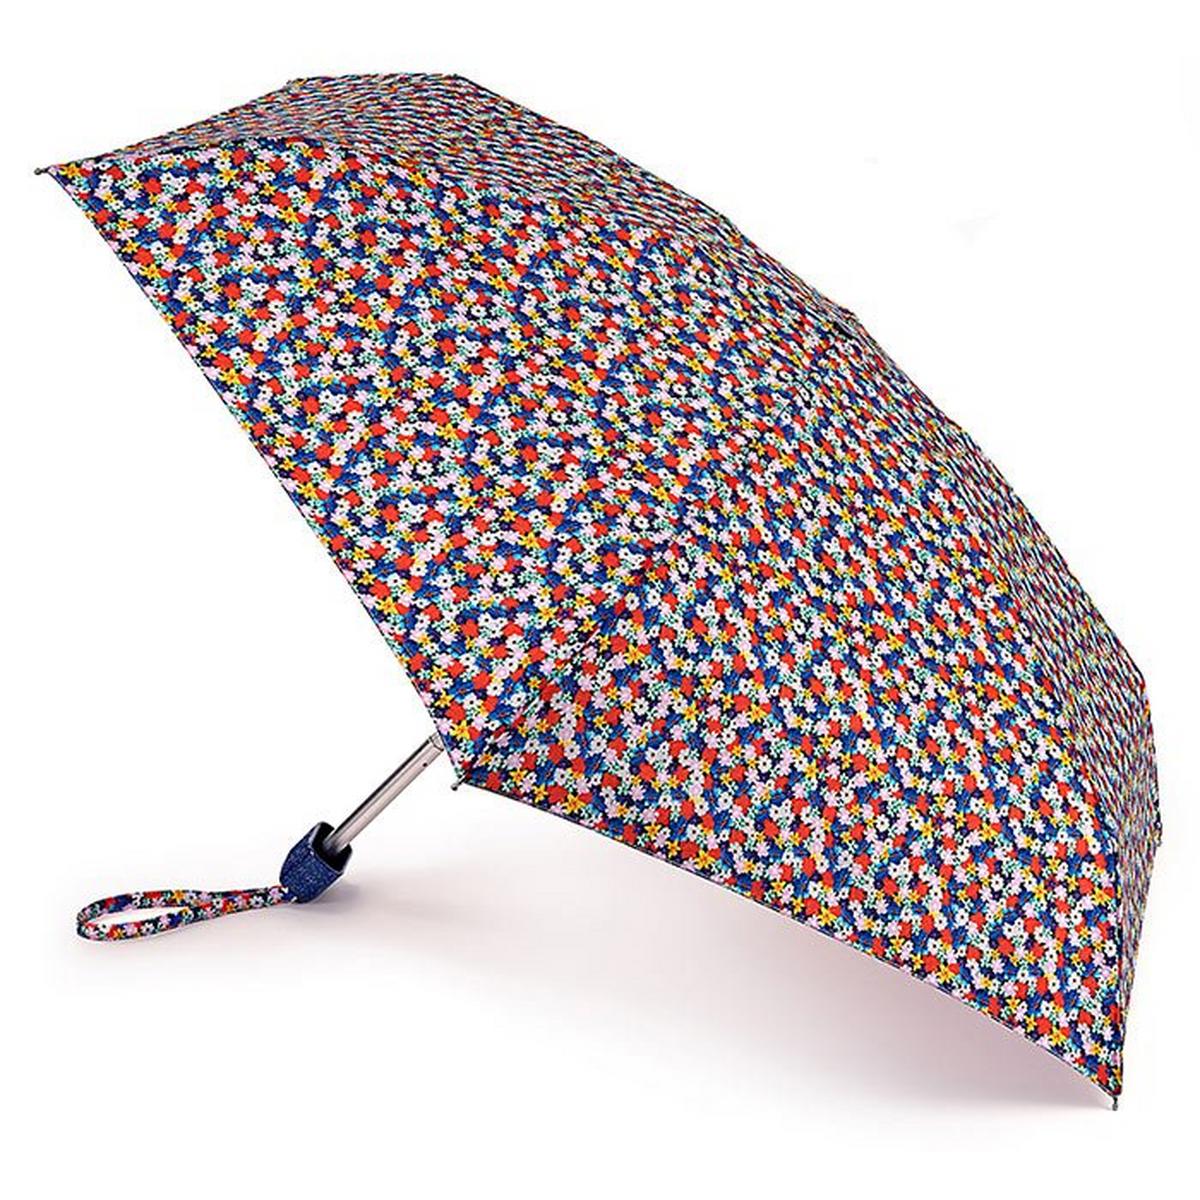 Tiny 2 Umbrella